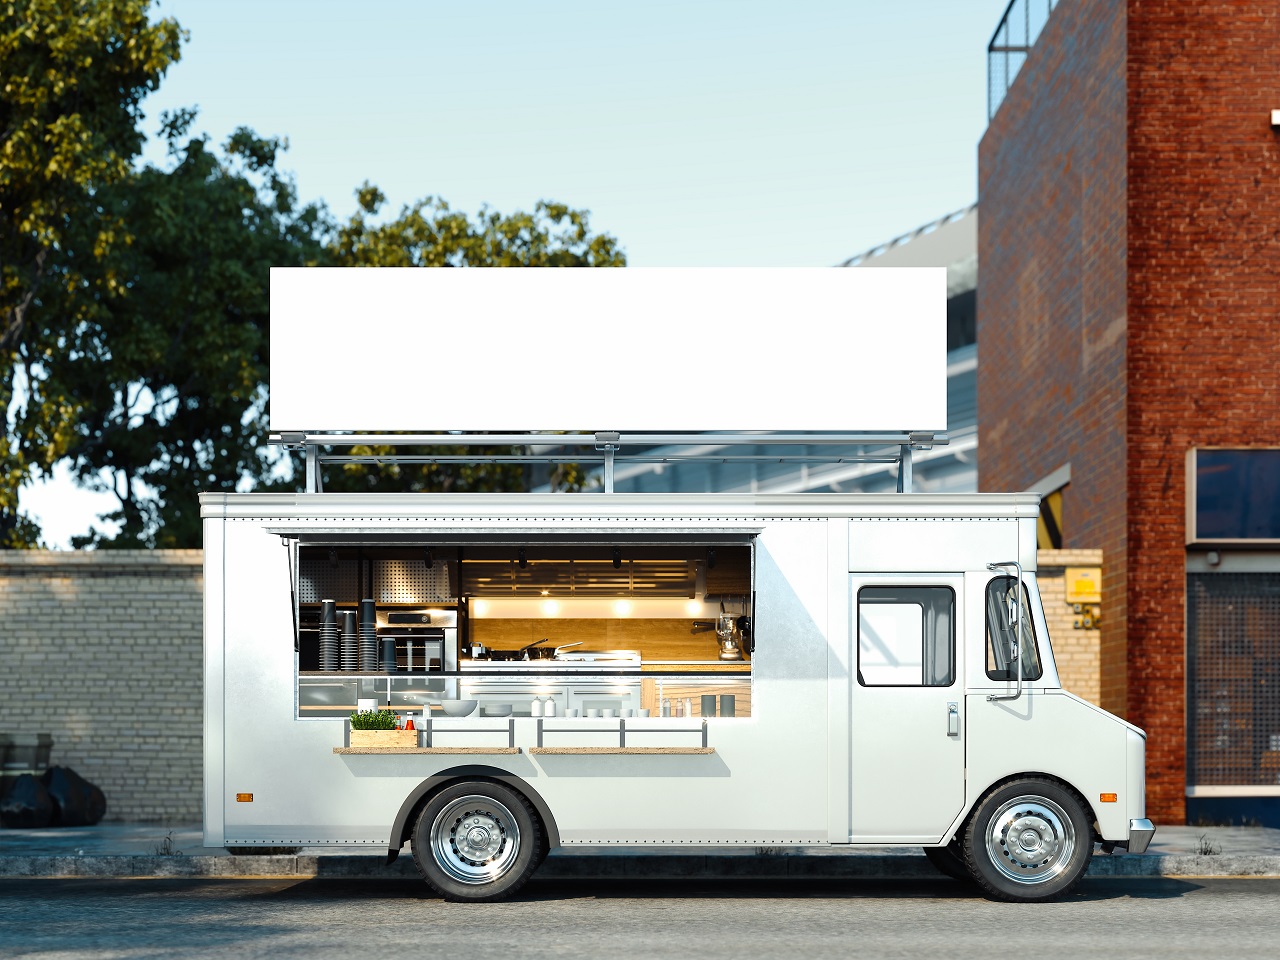 Kuchnia na kółkach – czyli o modzie na food trucki